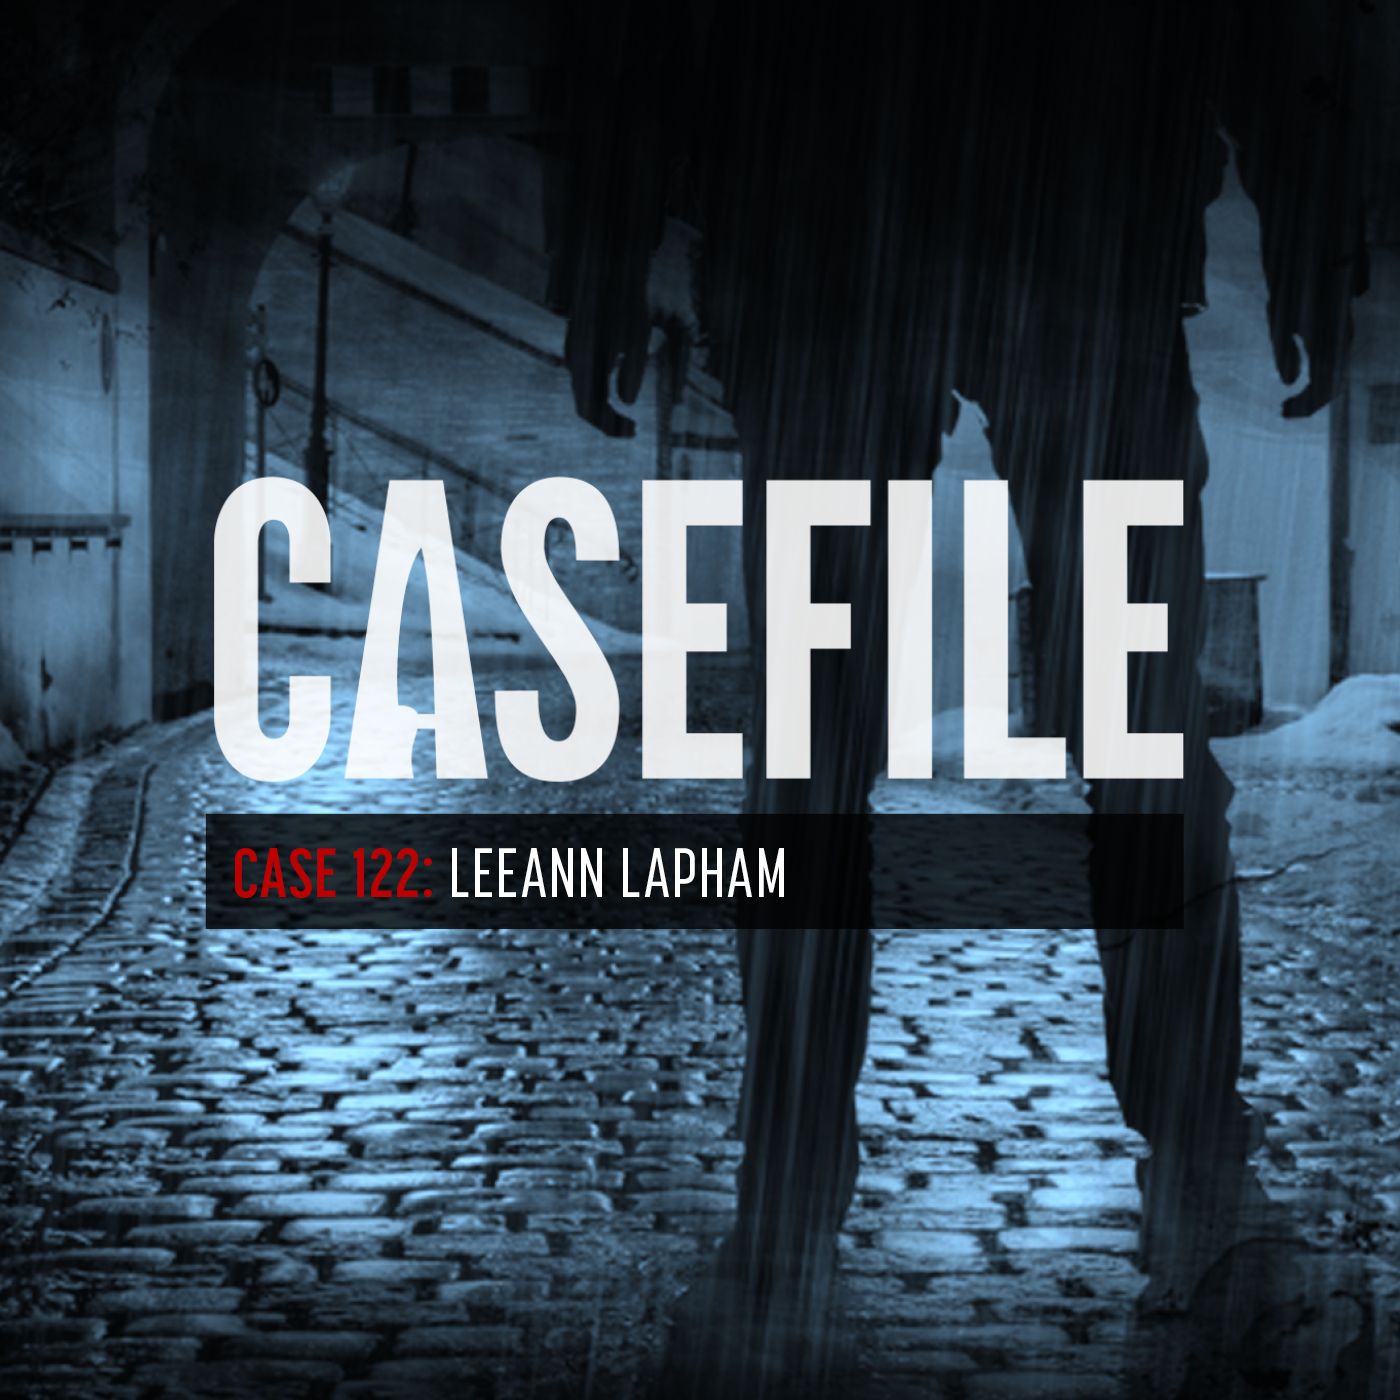 Case 122: Leeann Lapham